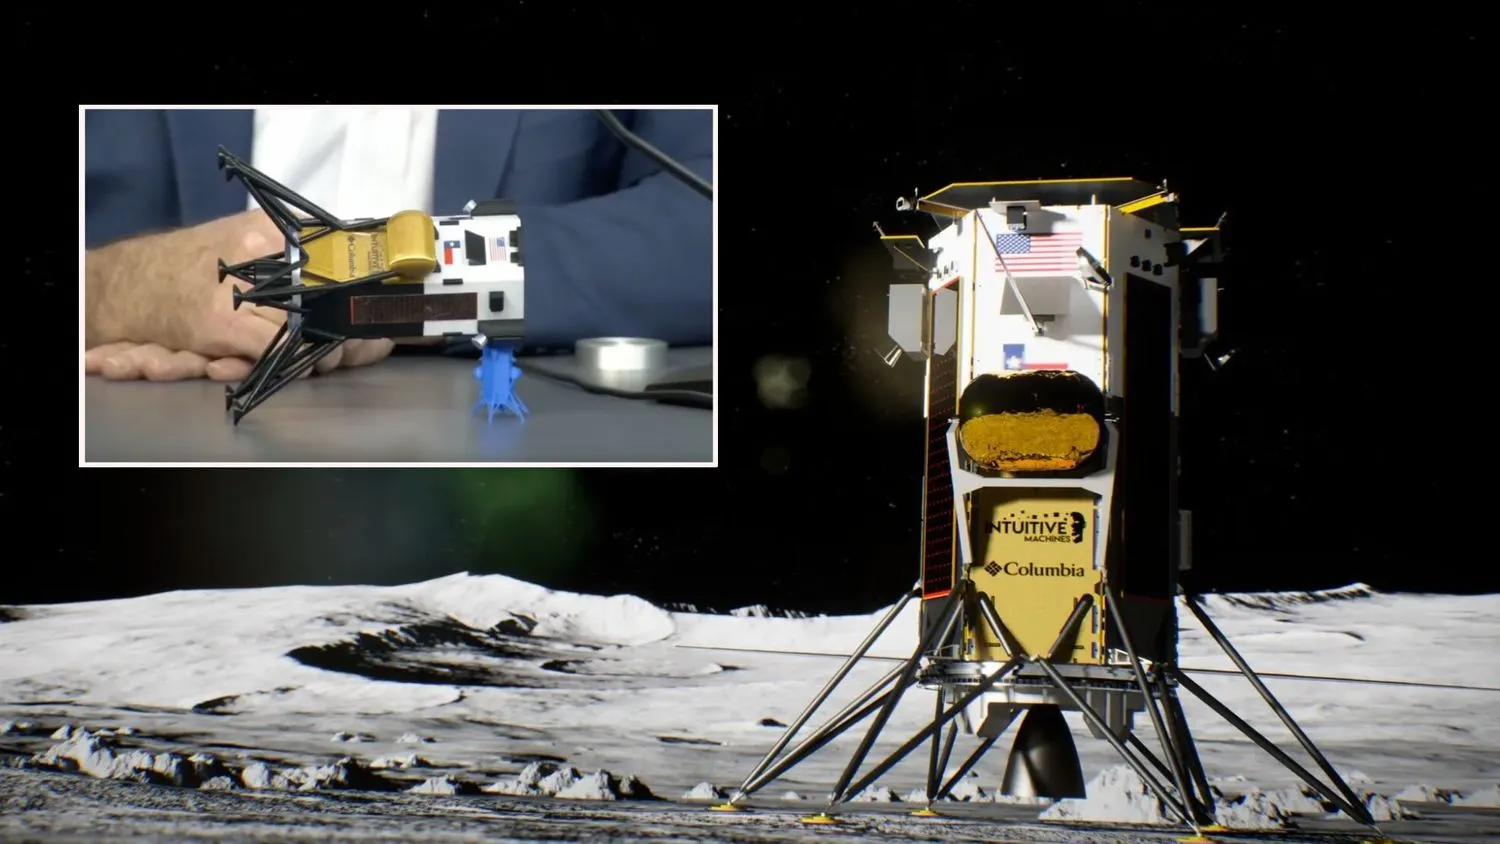 Künstlerische Illustration eines goldenen und silbernen Landegeräts auf dem Mond, das aufrecht steht; ein Einschub zeigt ein kleines Modell desselben Raumfahrzeugs, das auf der Seite liegend auf einem Tisch steht.